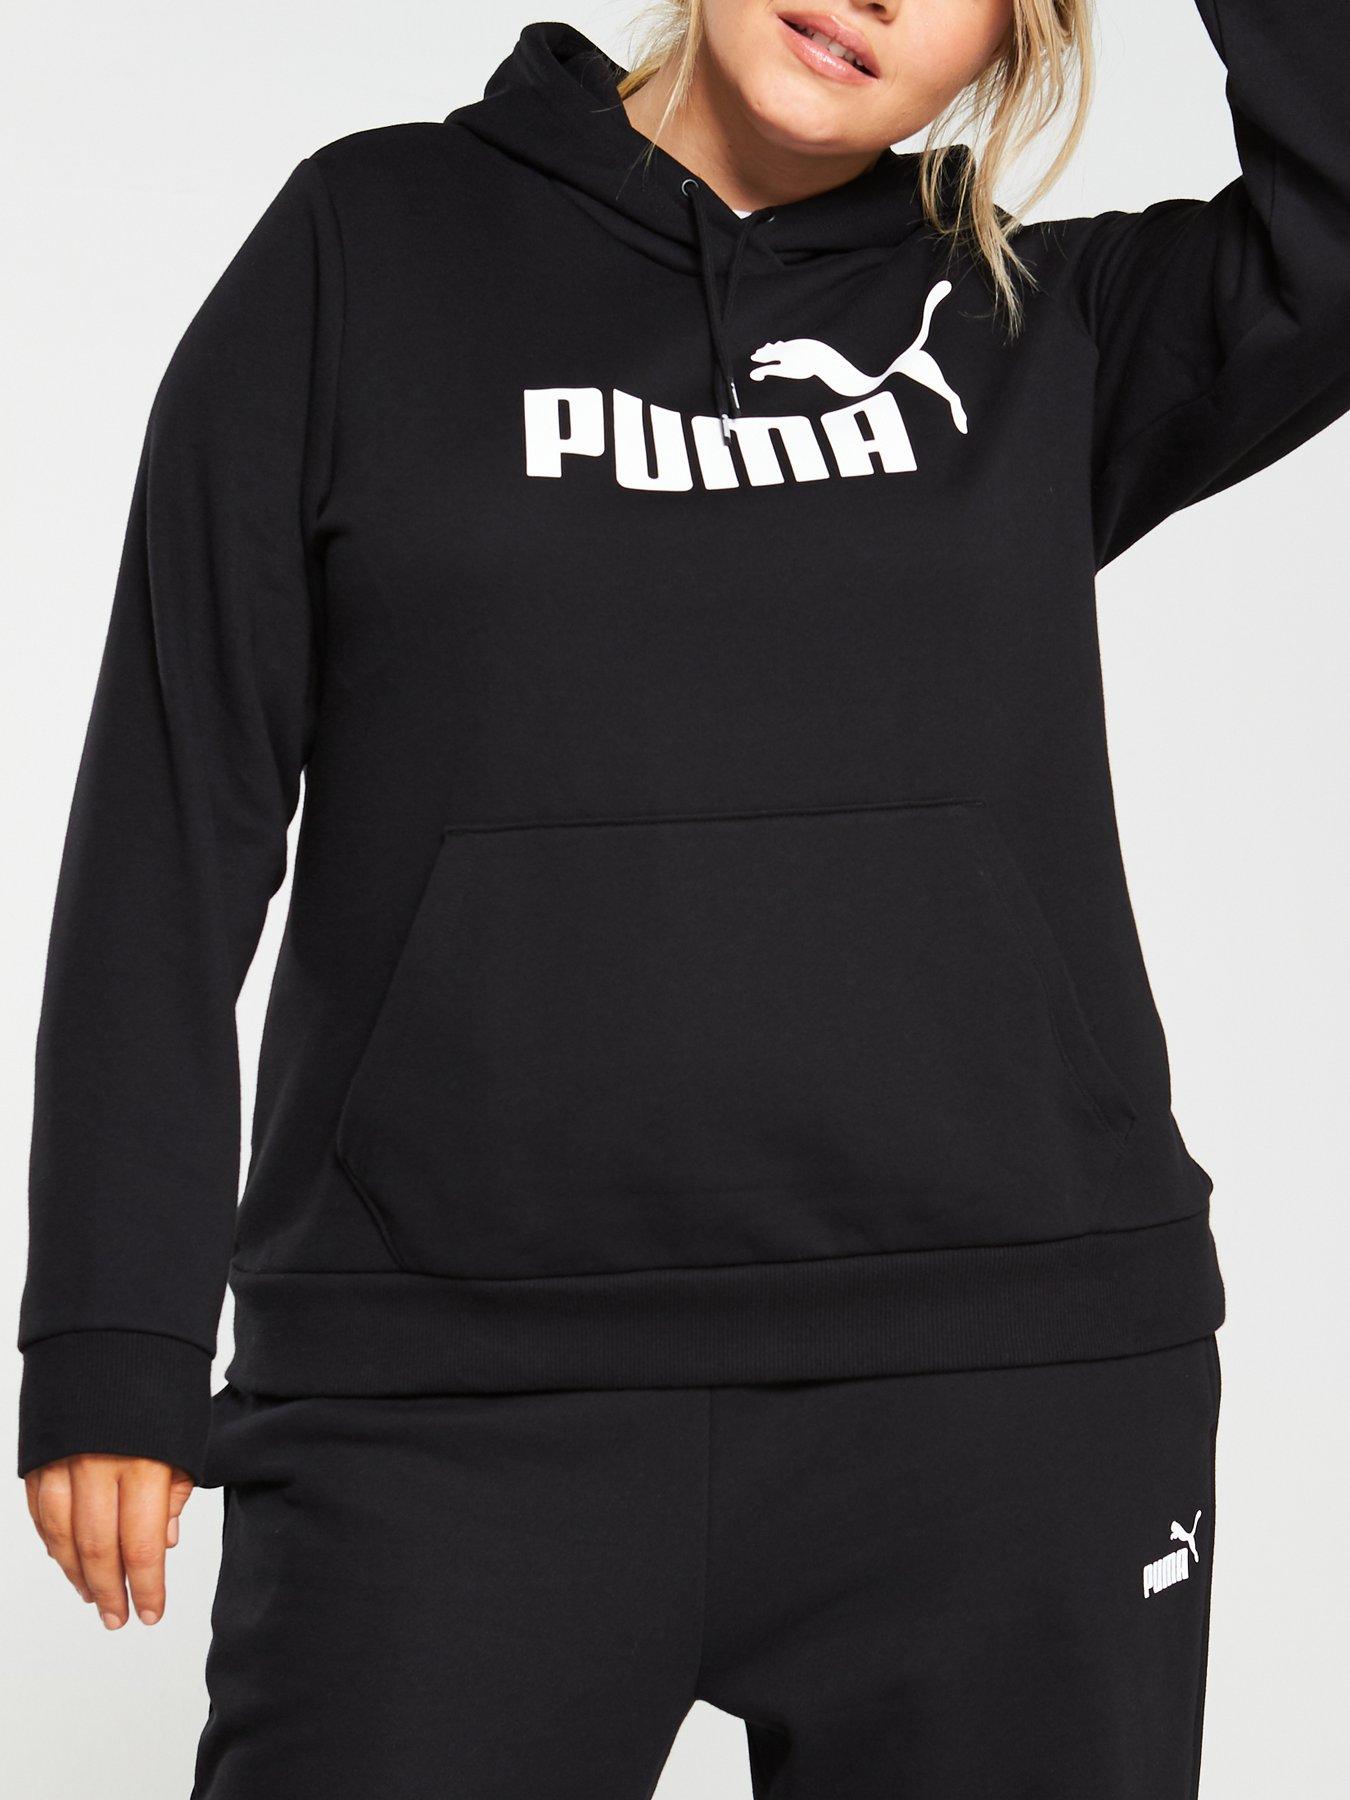 puma clothing uk